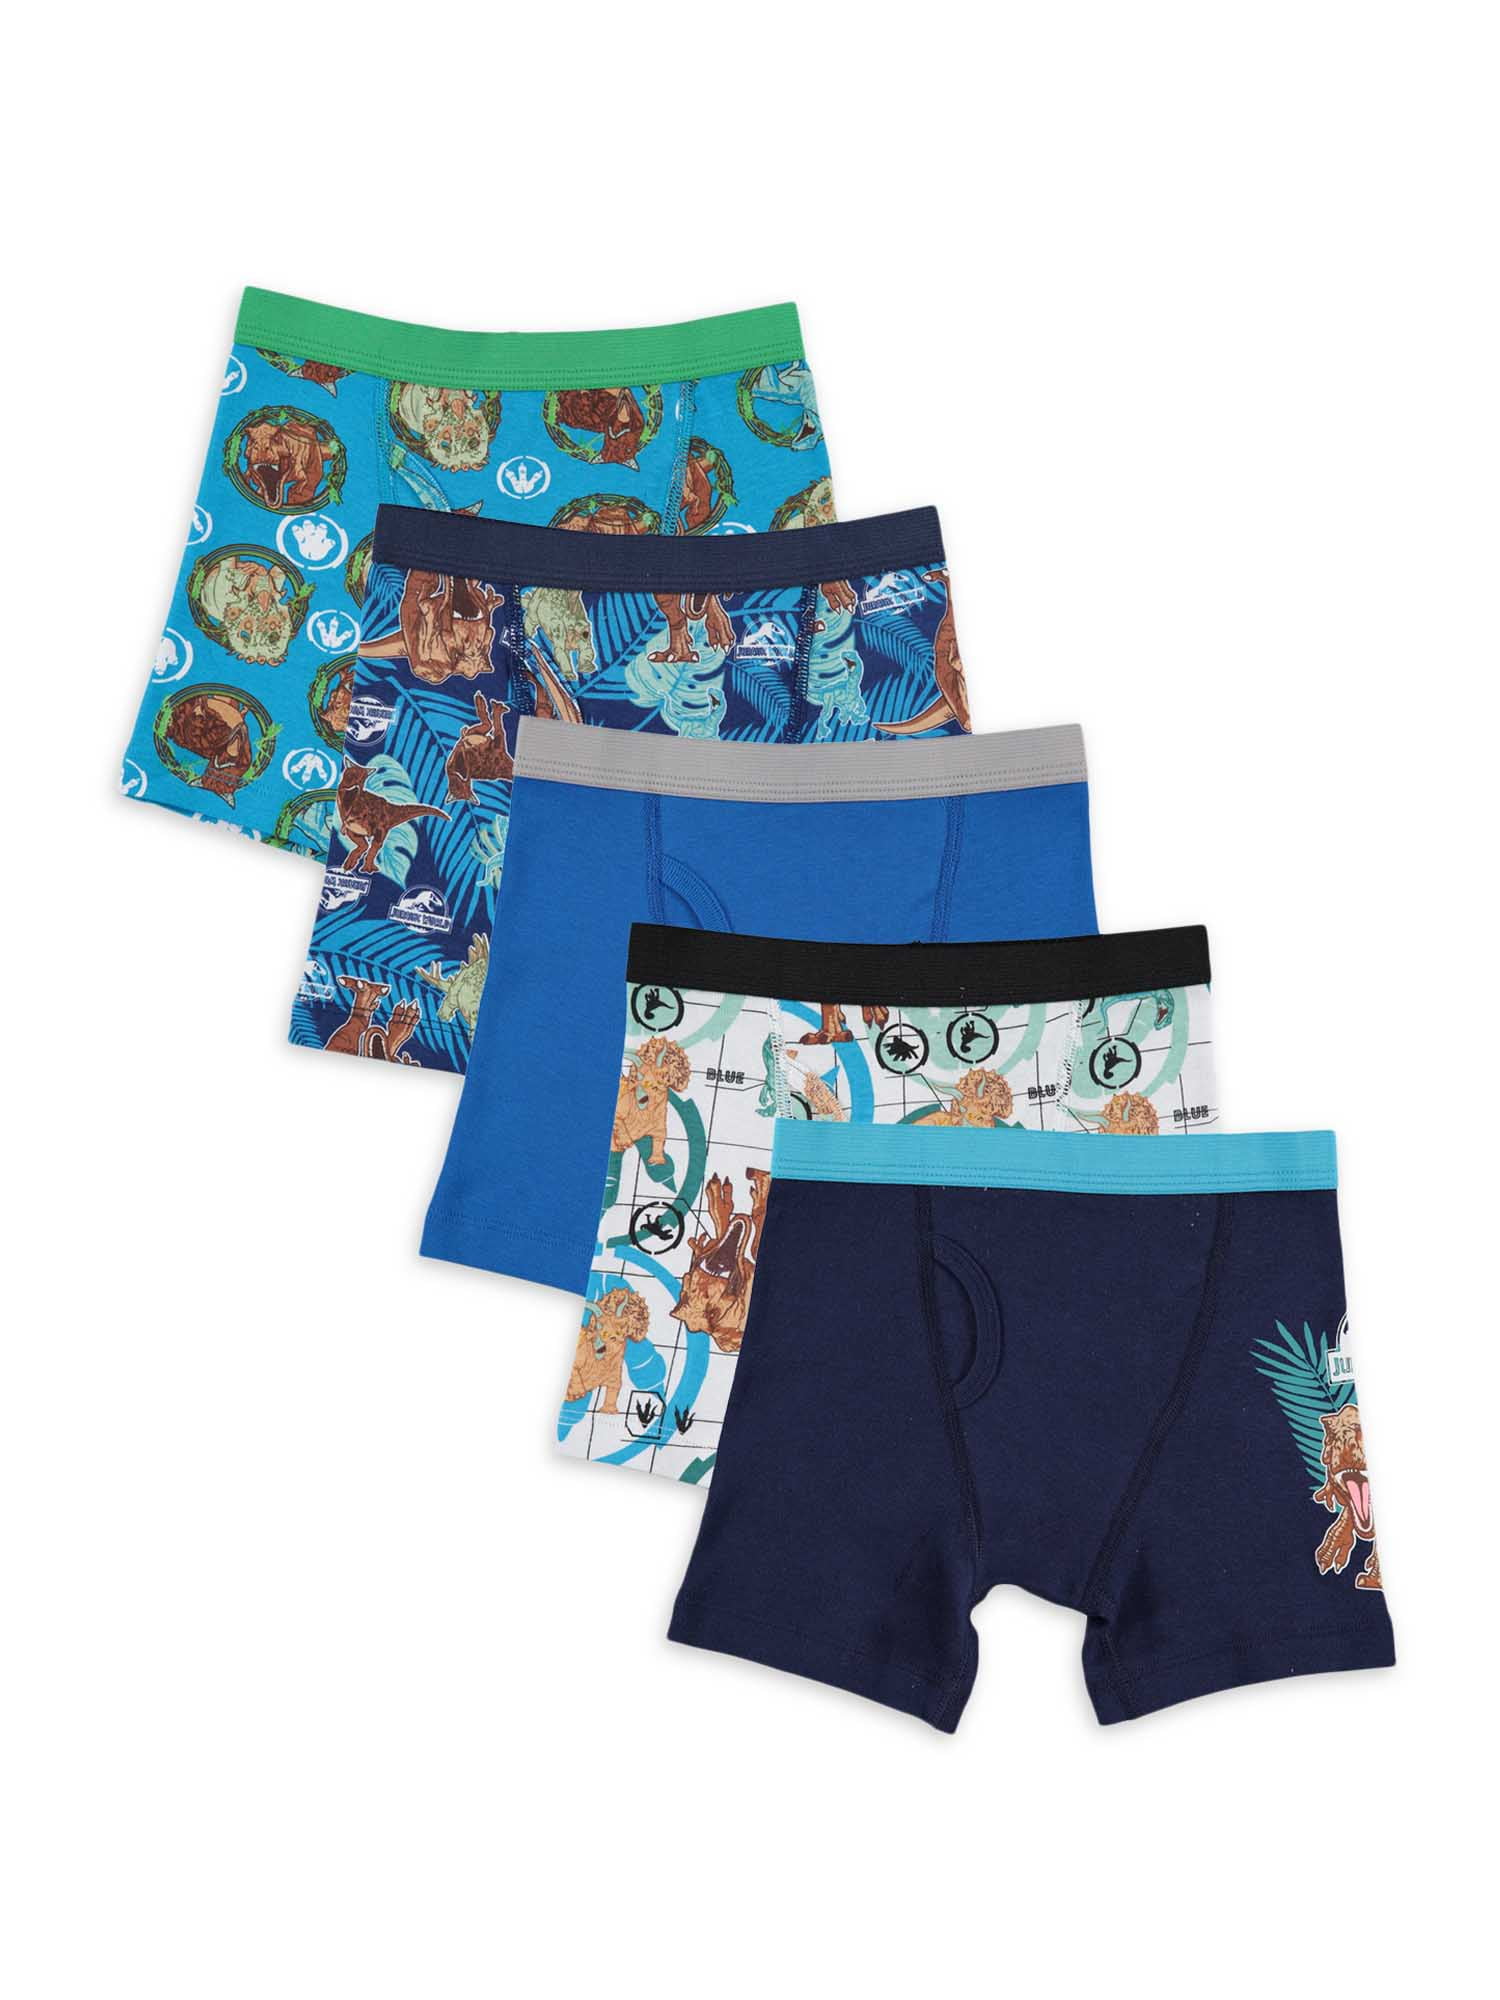 Universal Toddler Boys' 7-Pack Underwear Briefs, Jurassic World, 4t 